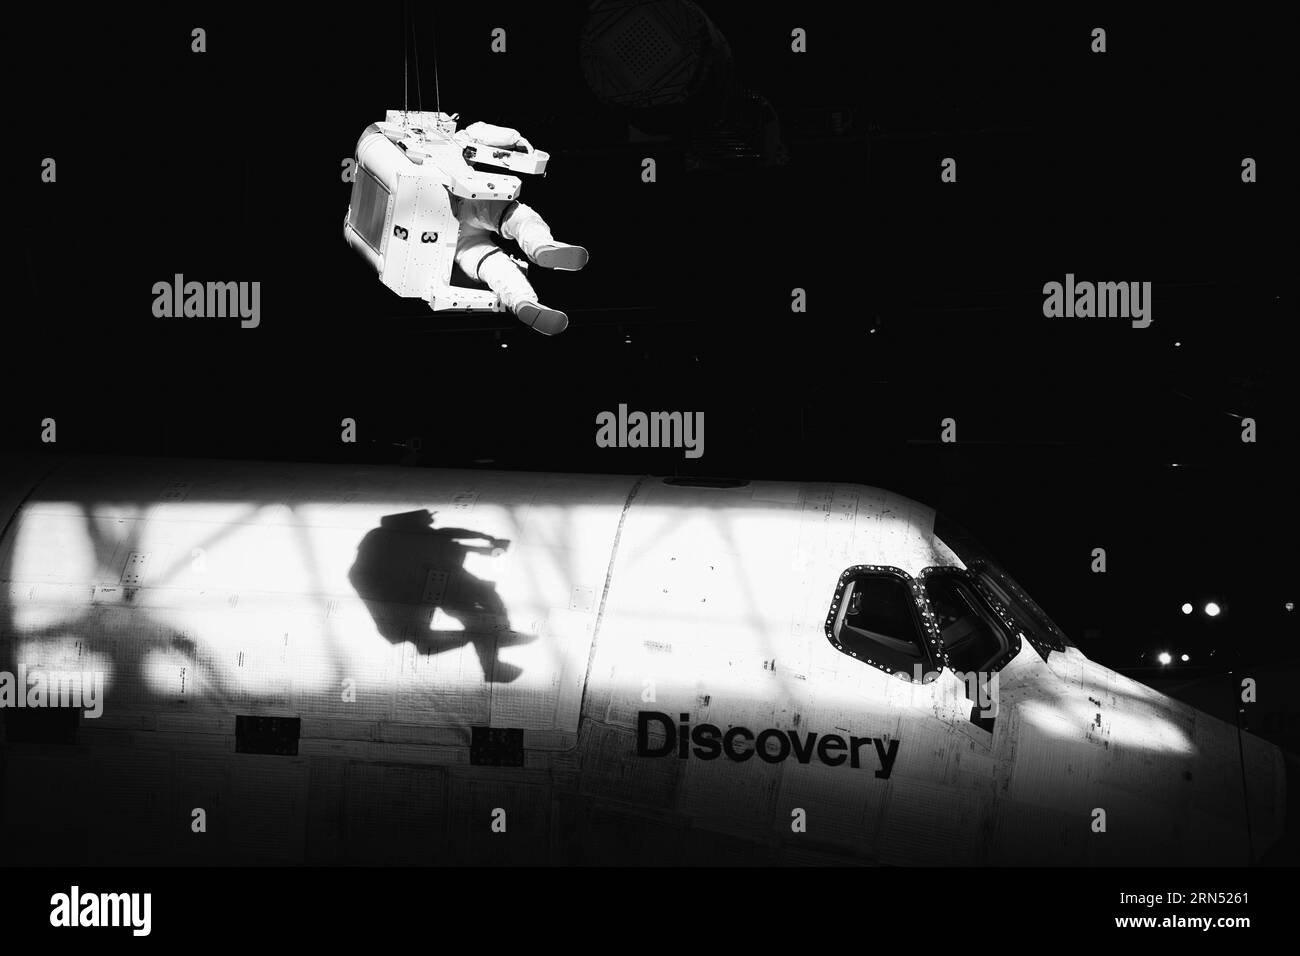 CHANTILLY, Virginia, USA – das Space Shuttle Discovery ist im Udvar-Hazy Center, einem nebengebäude des Smithsonian National Air and Space Museum, ausgestellt. Als einer der Flaggschiffe der NASA absolvierte die Discovery 39 Missionen über 27 Jahre vor ihrer Ausmusterung. Stockfoto